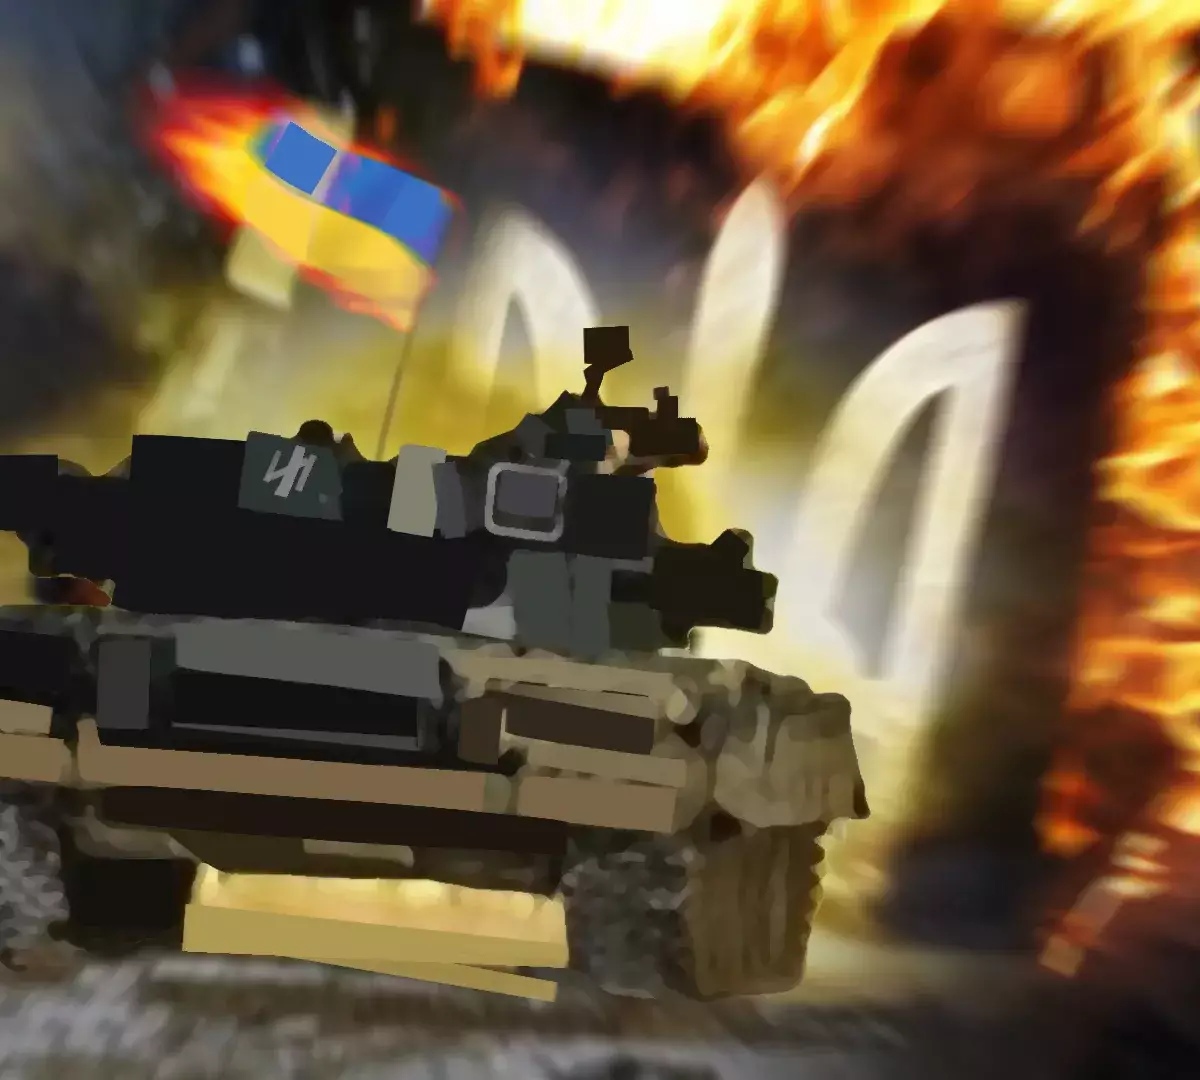 Читатели Spiegel сравнили поставку танков на Украину со сдачей в металлолом